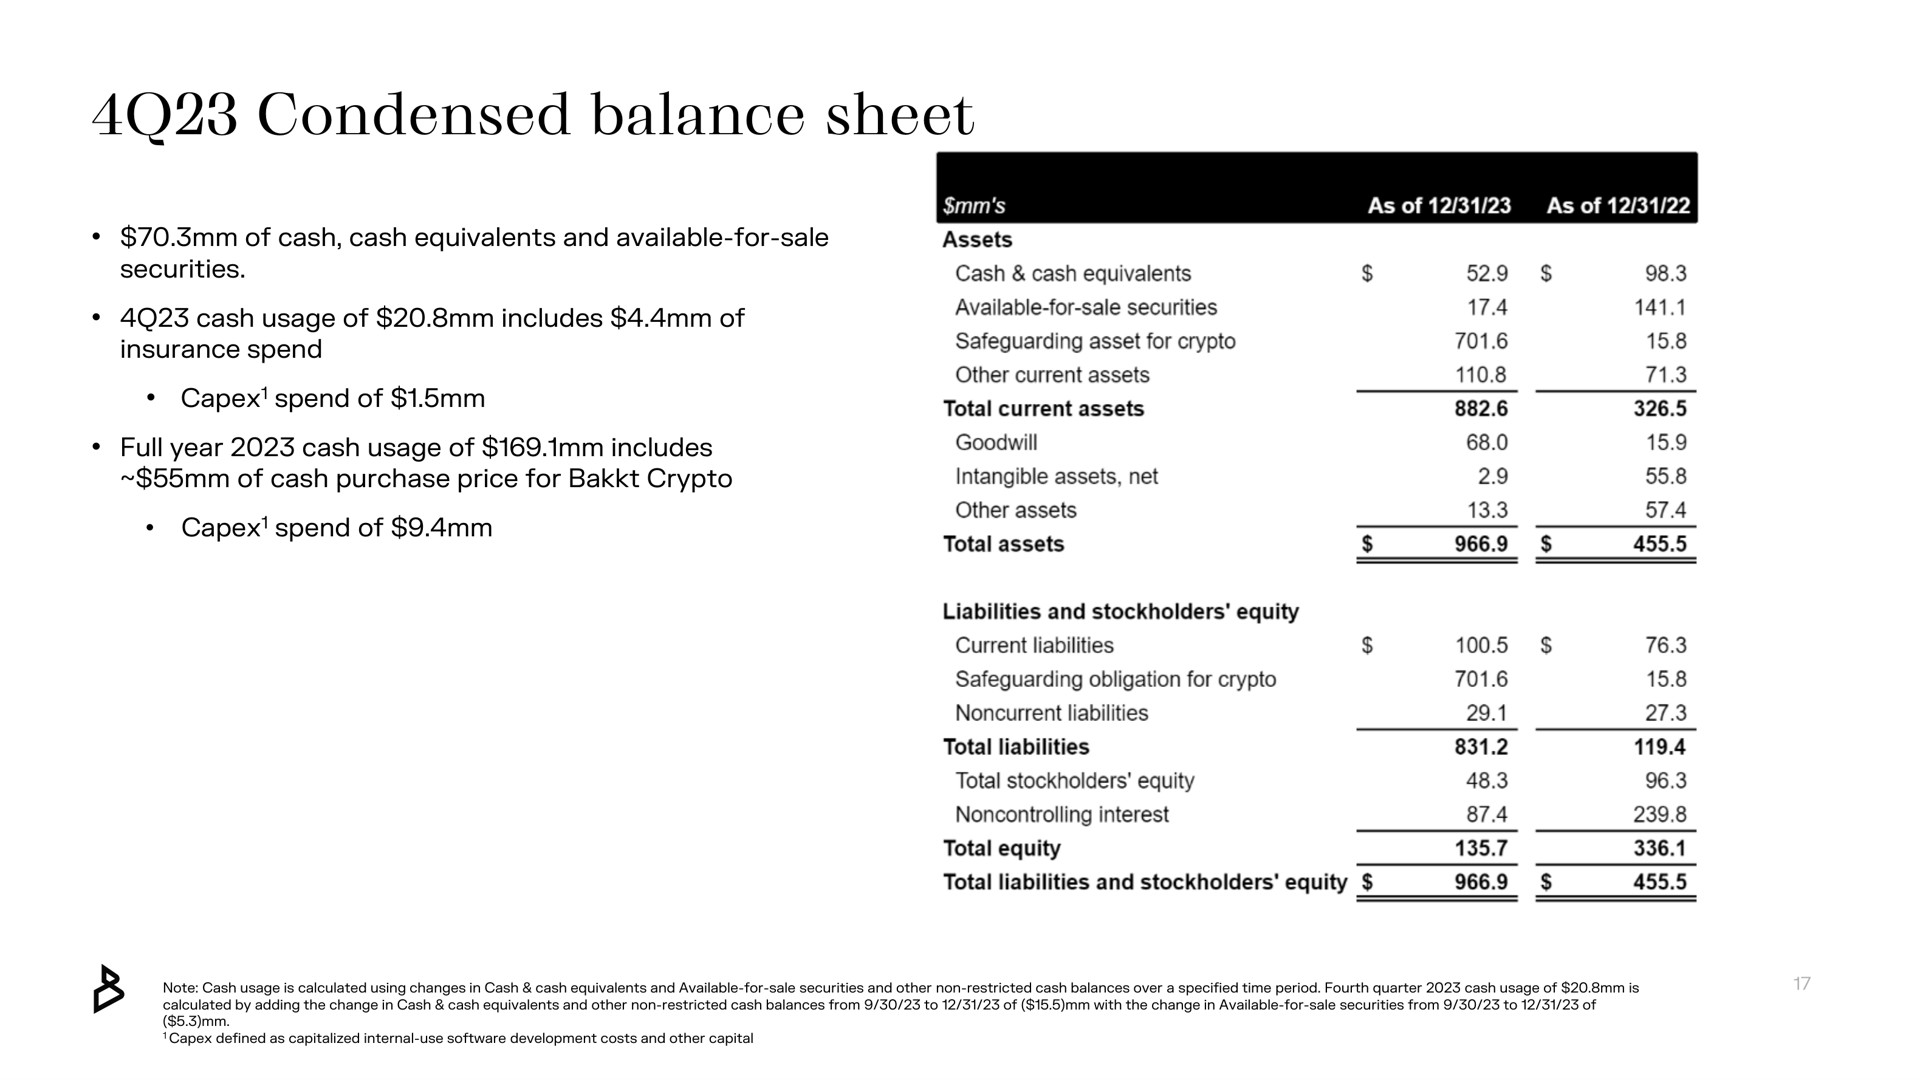 condensed balance sheet spend of total assets | Bakkt